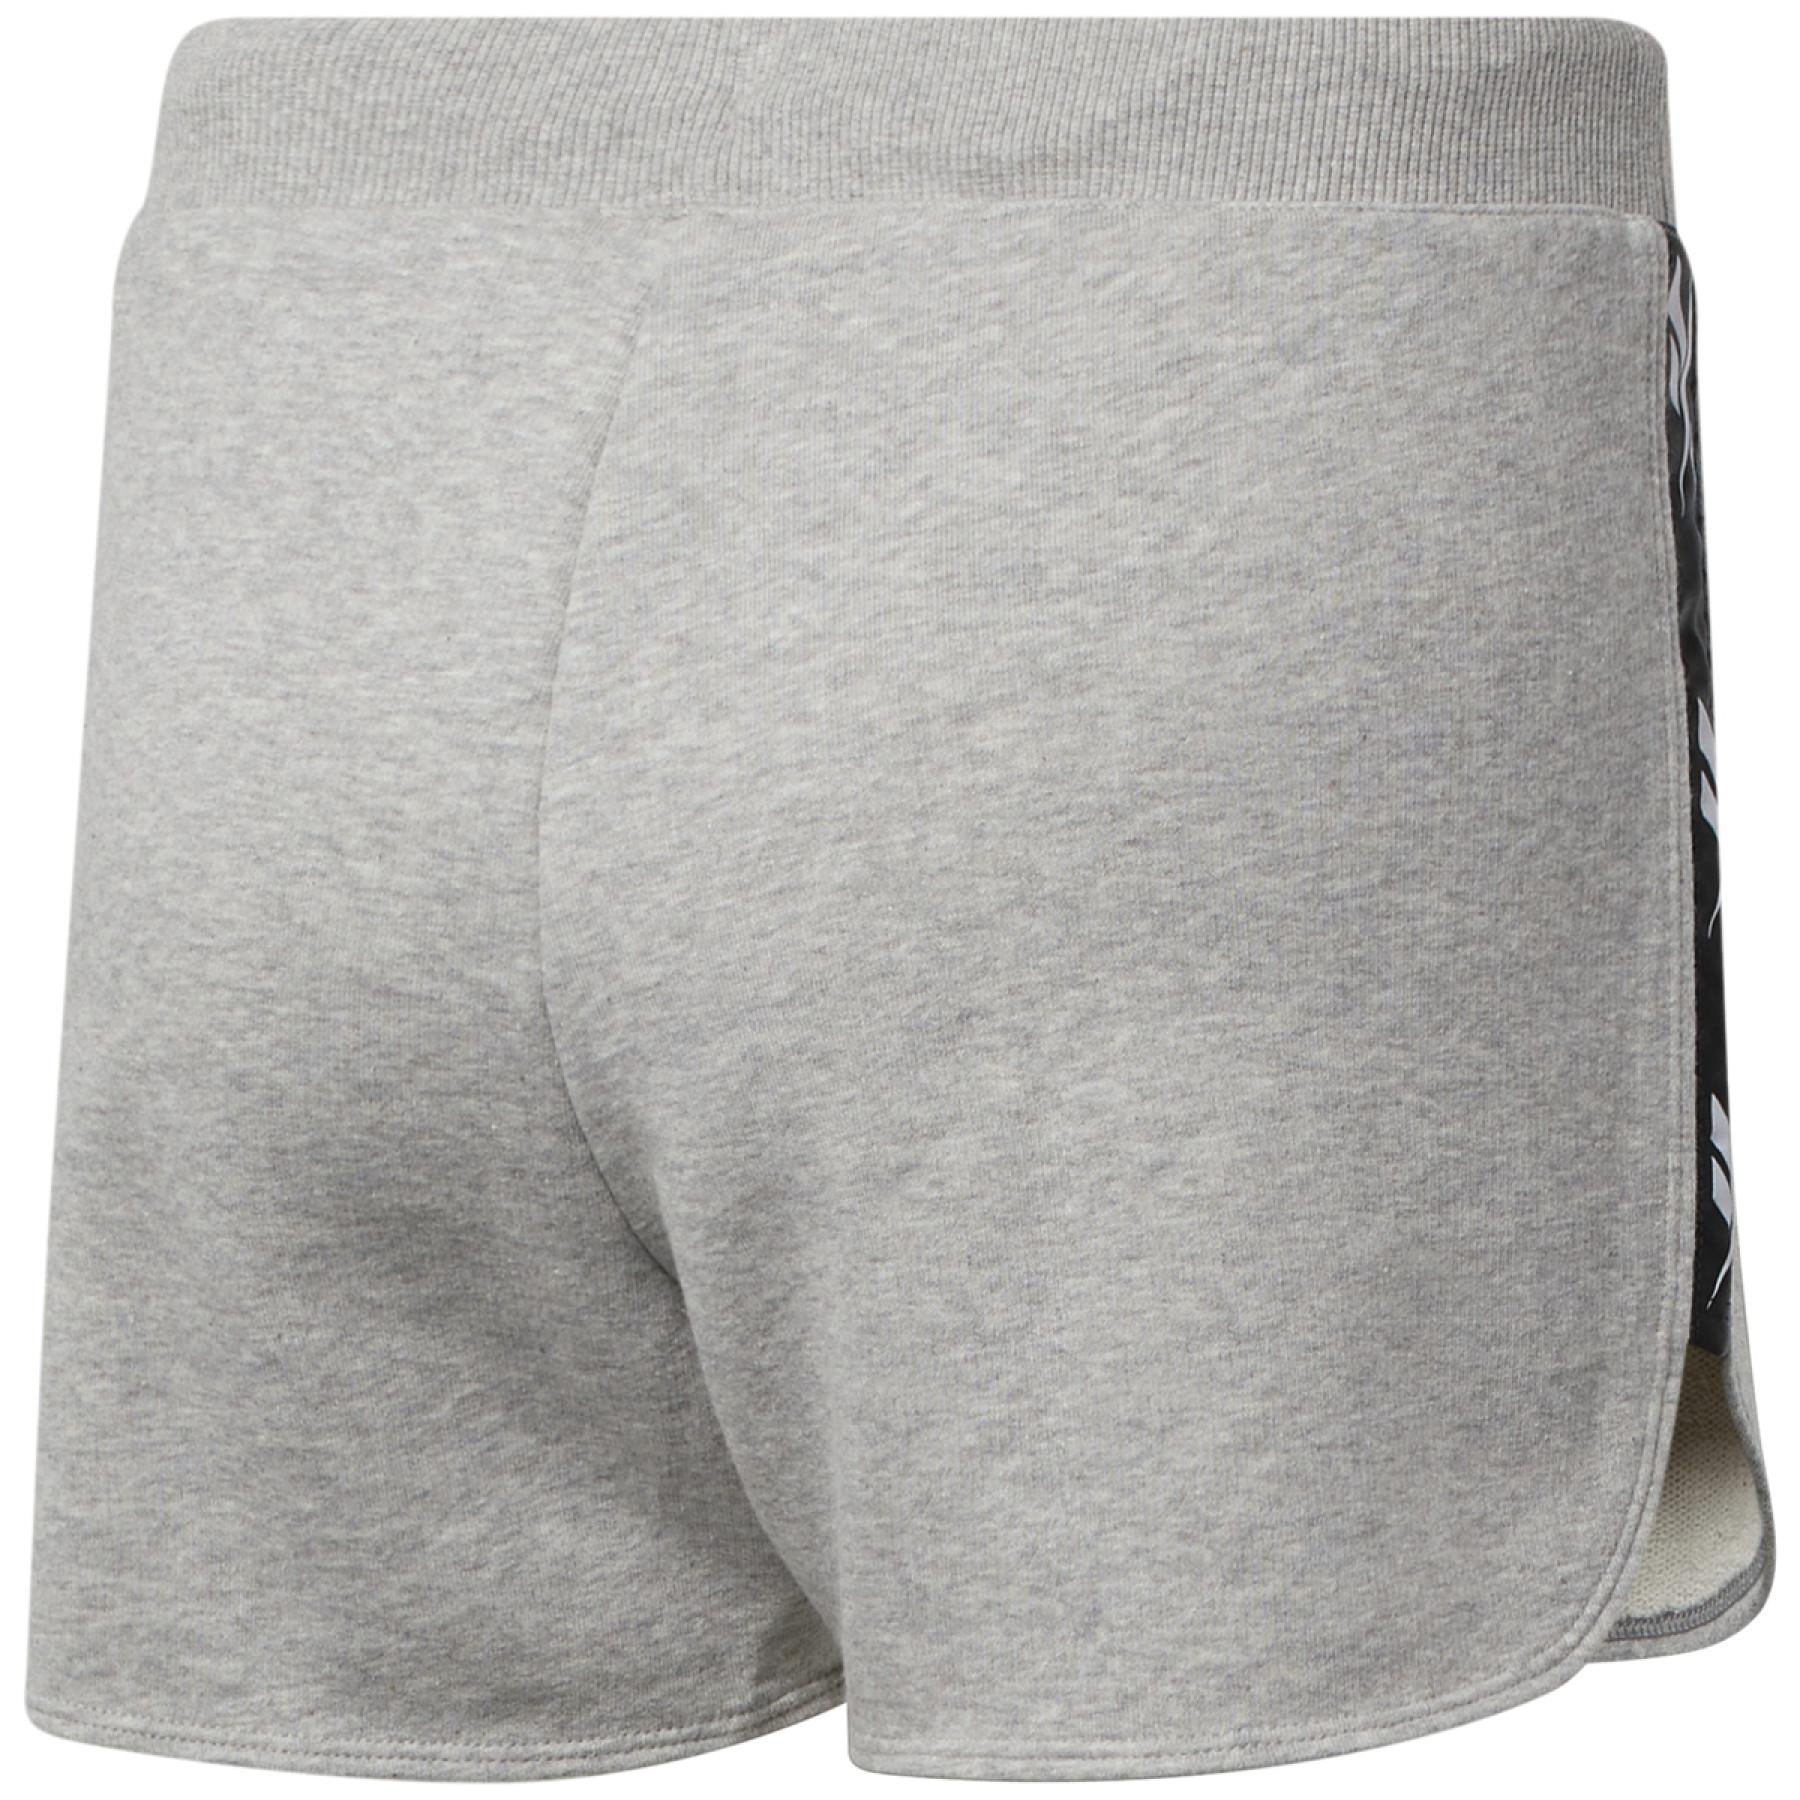 Women's shorts Reebok Tape